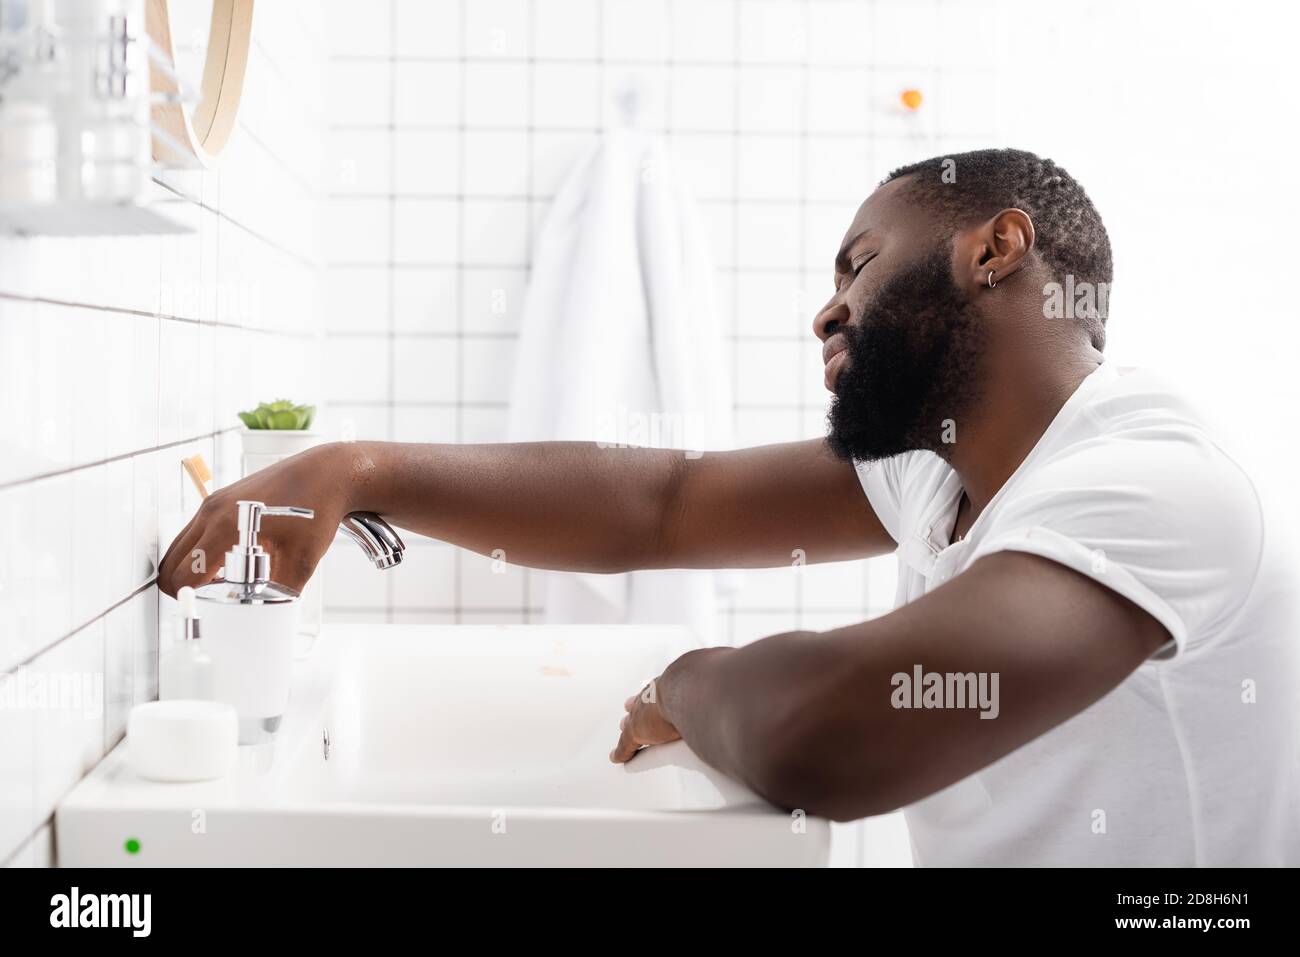 Müder afro-amerikanischer Mann, der sich auf dem Waschbecken lehnte und den  Wasserhahn aufversuchte Stockfotografie - Alamy